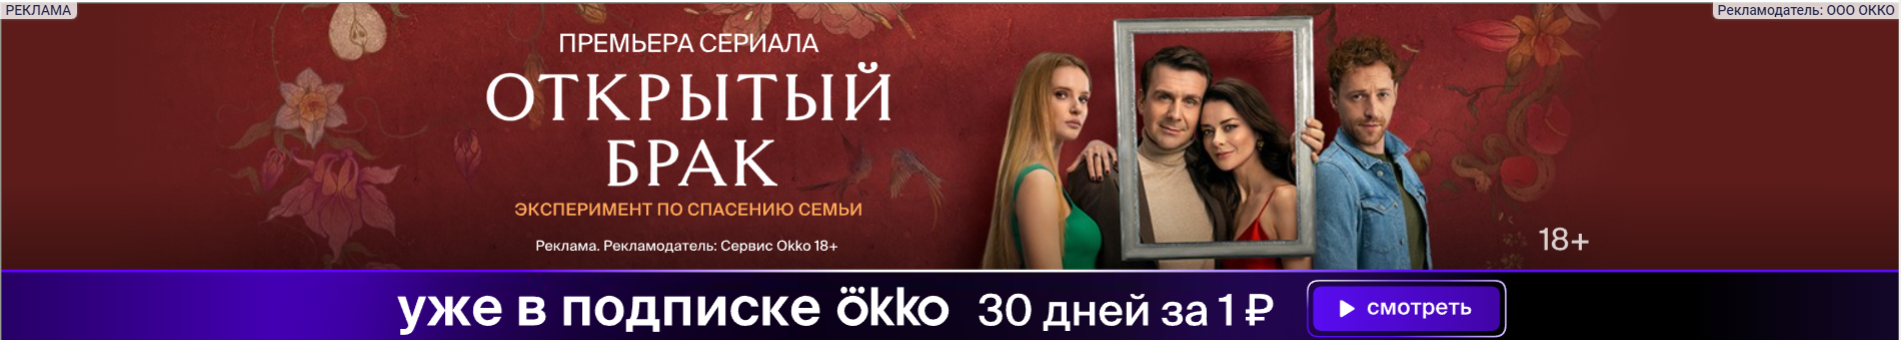 Скриншот баннера с сайта Афиши дейли, который рекламирует сериал «Открытый брак». На баннере изображены актеры сериала и предложение подписаться на стриминг «Окко»